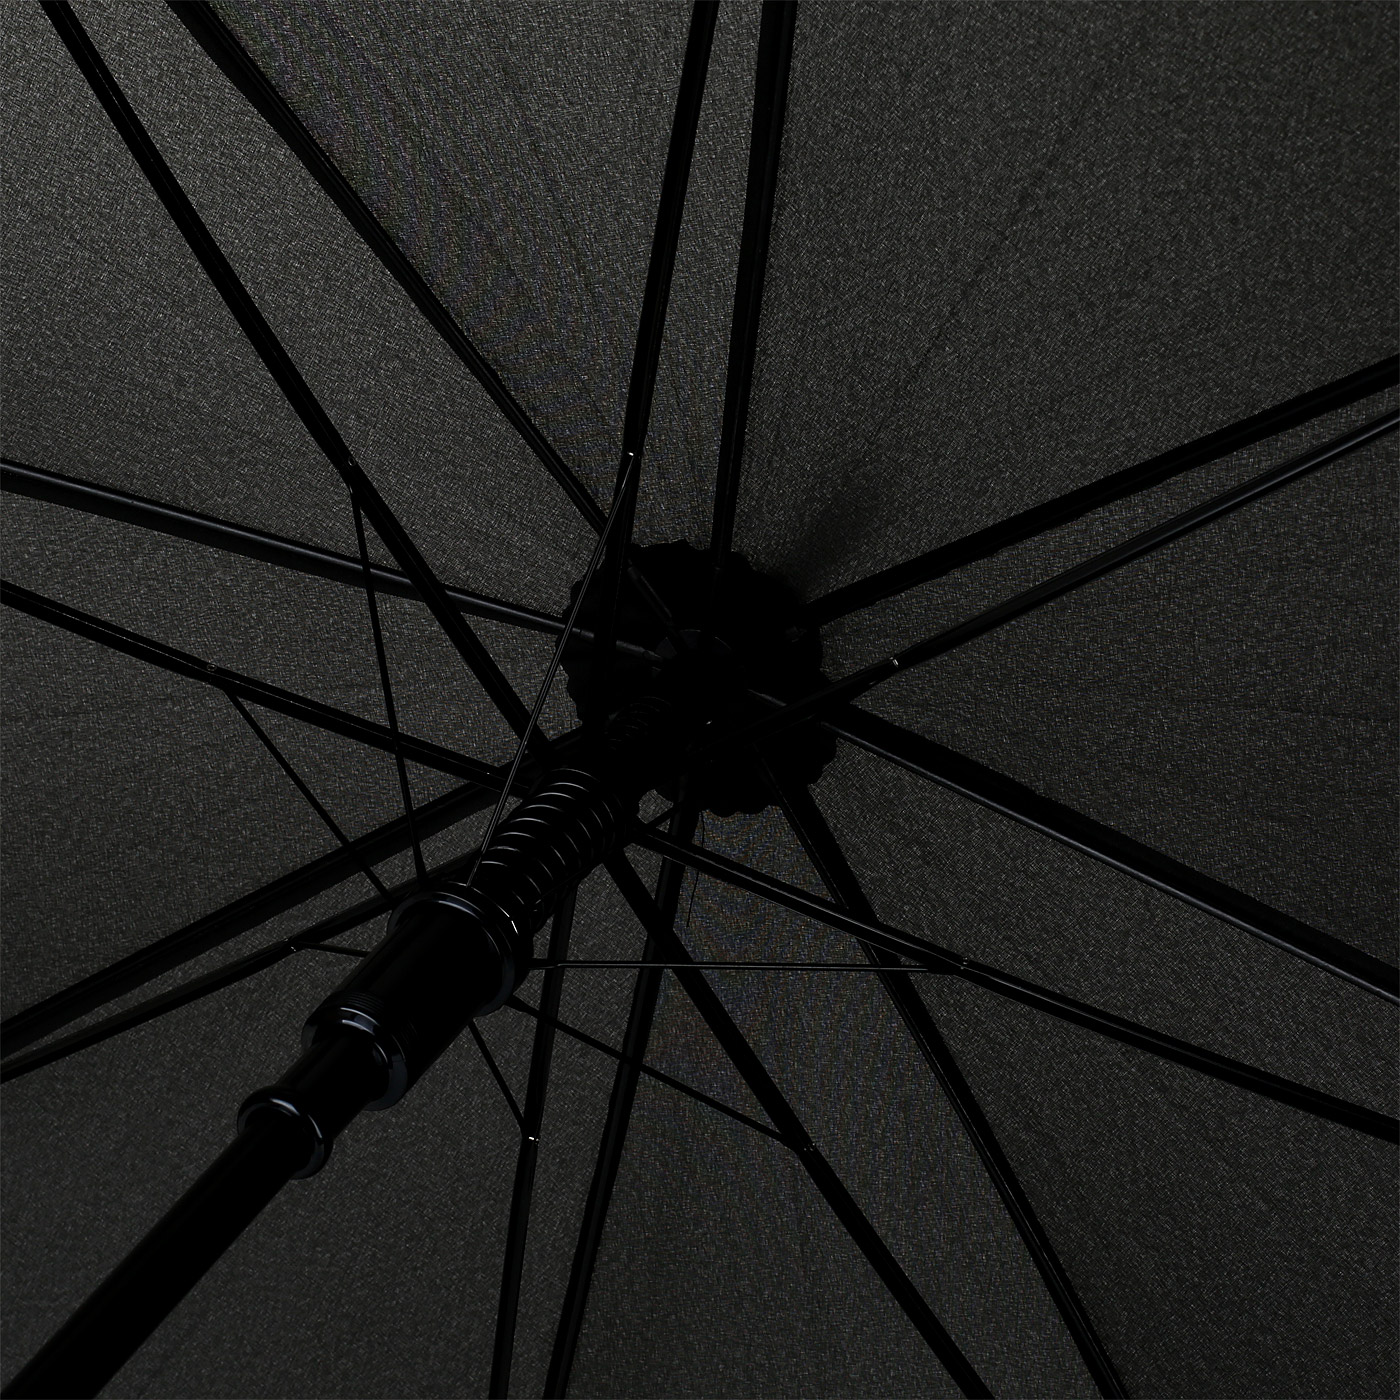 Зонт-трость с системой антиветер Doppler 